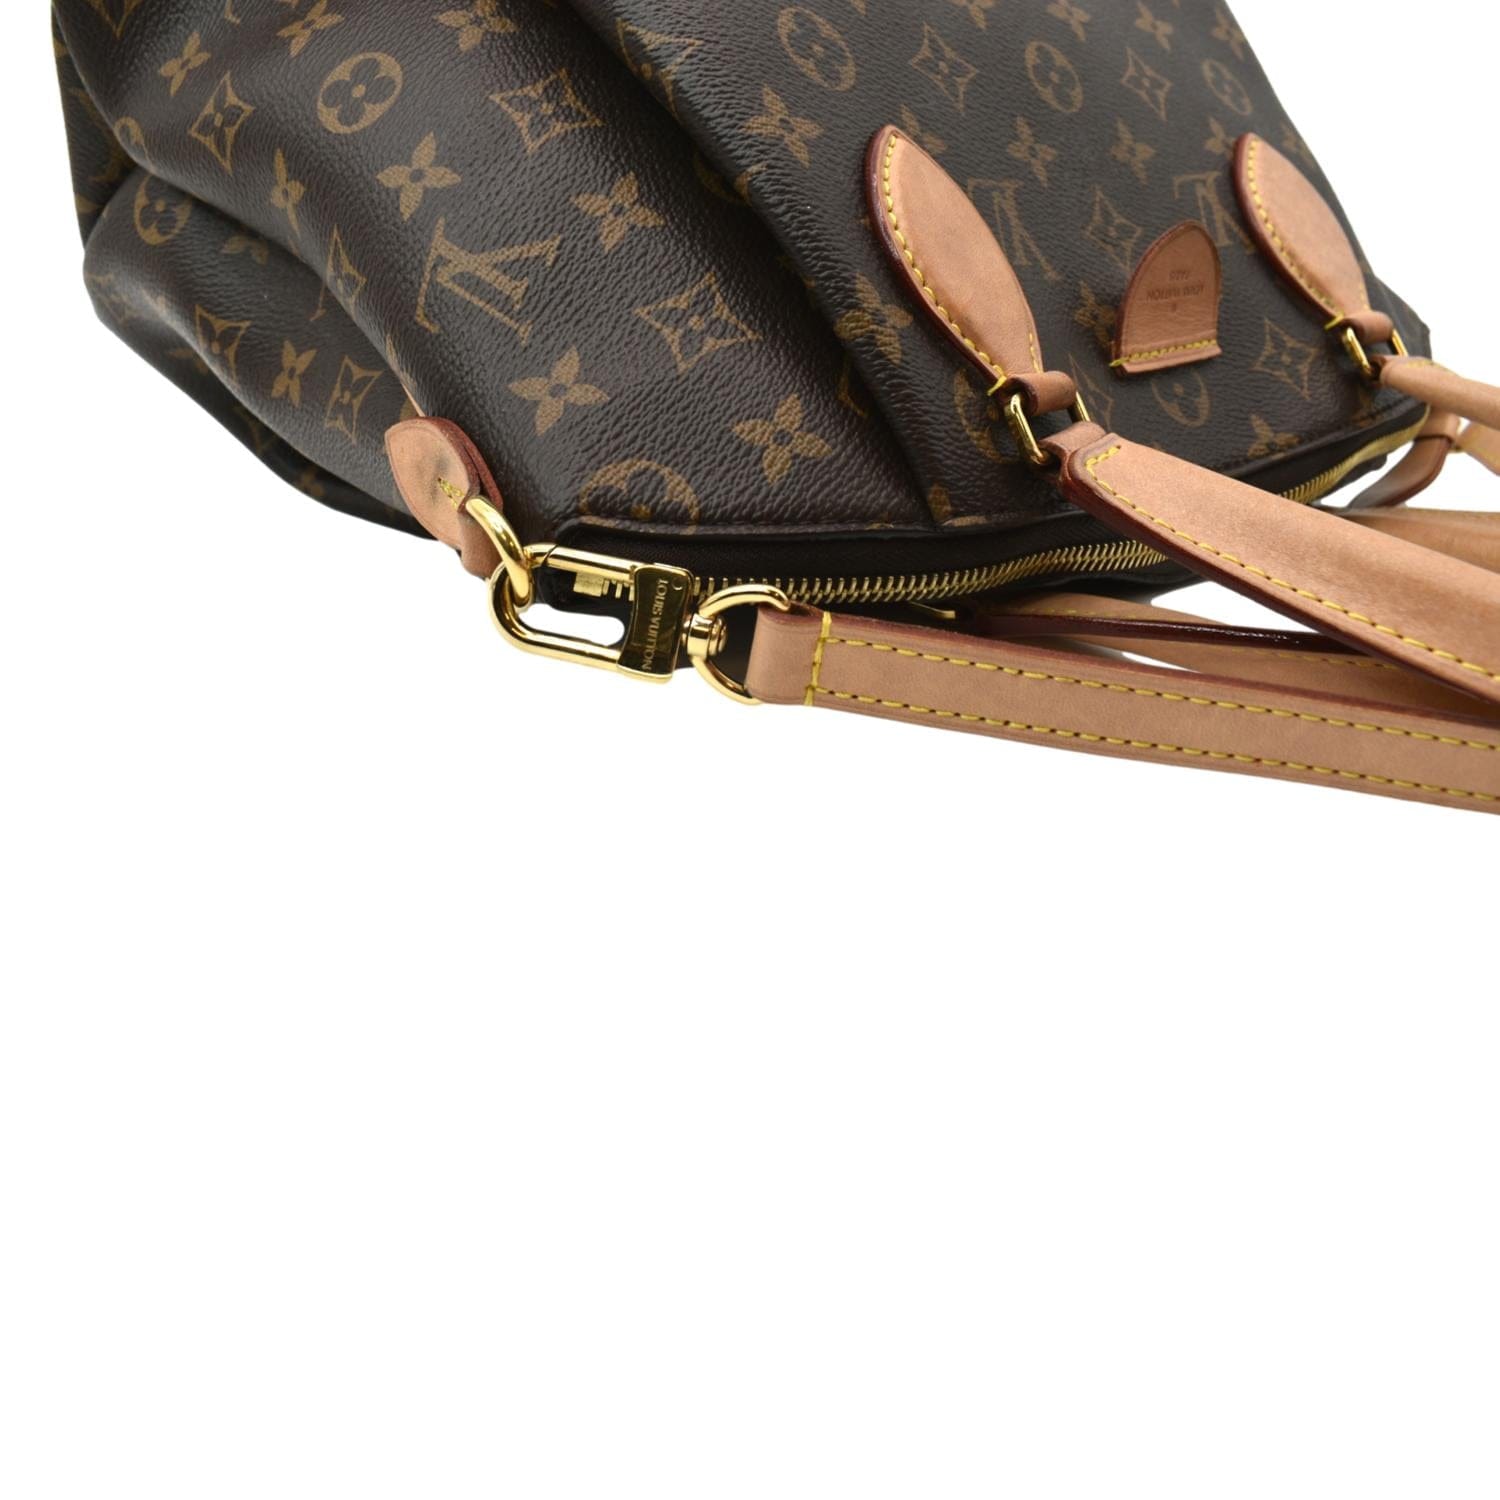 Louis Vuitton Women's Canvas Shoulder Bag